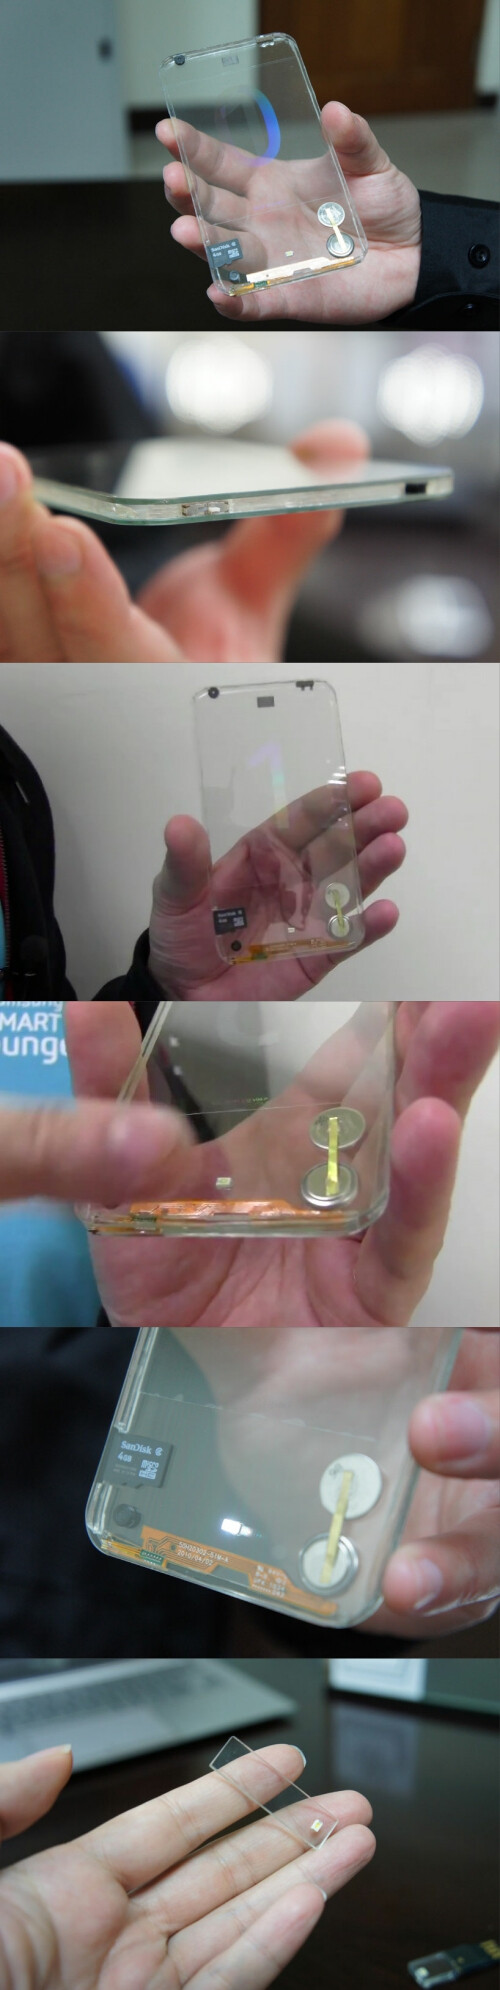 设计癖曾在去年介绍过一款透明的概念天气手机，可以实时显示当前的天气状况。就在前不久我们还介绍过一款透明的iPad概念设计。这两款设计最大特点就是都采用了透明的外壳设计，问题在于电子零件和电池问题。现在来自台湾的全球光电玻璃领先者宝创科技（Plolytron）推出了一款透明的智能手机原型机。